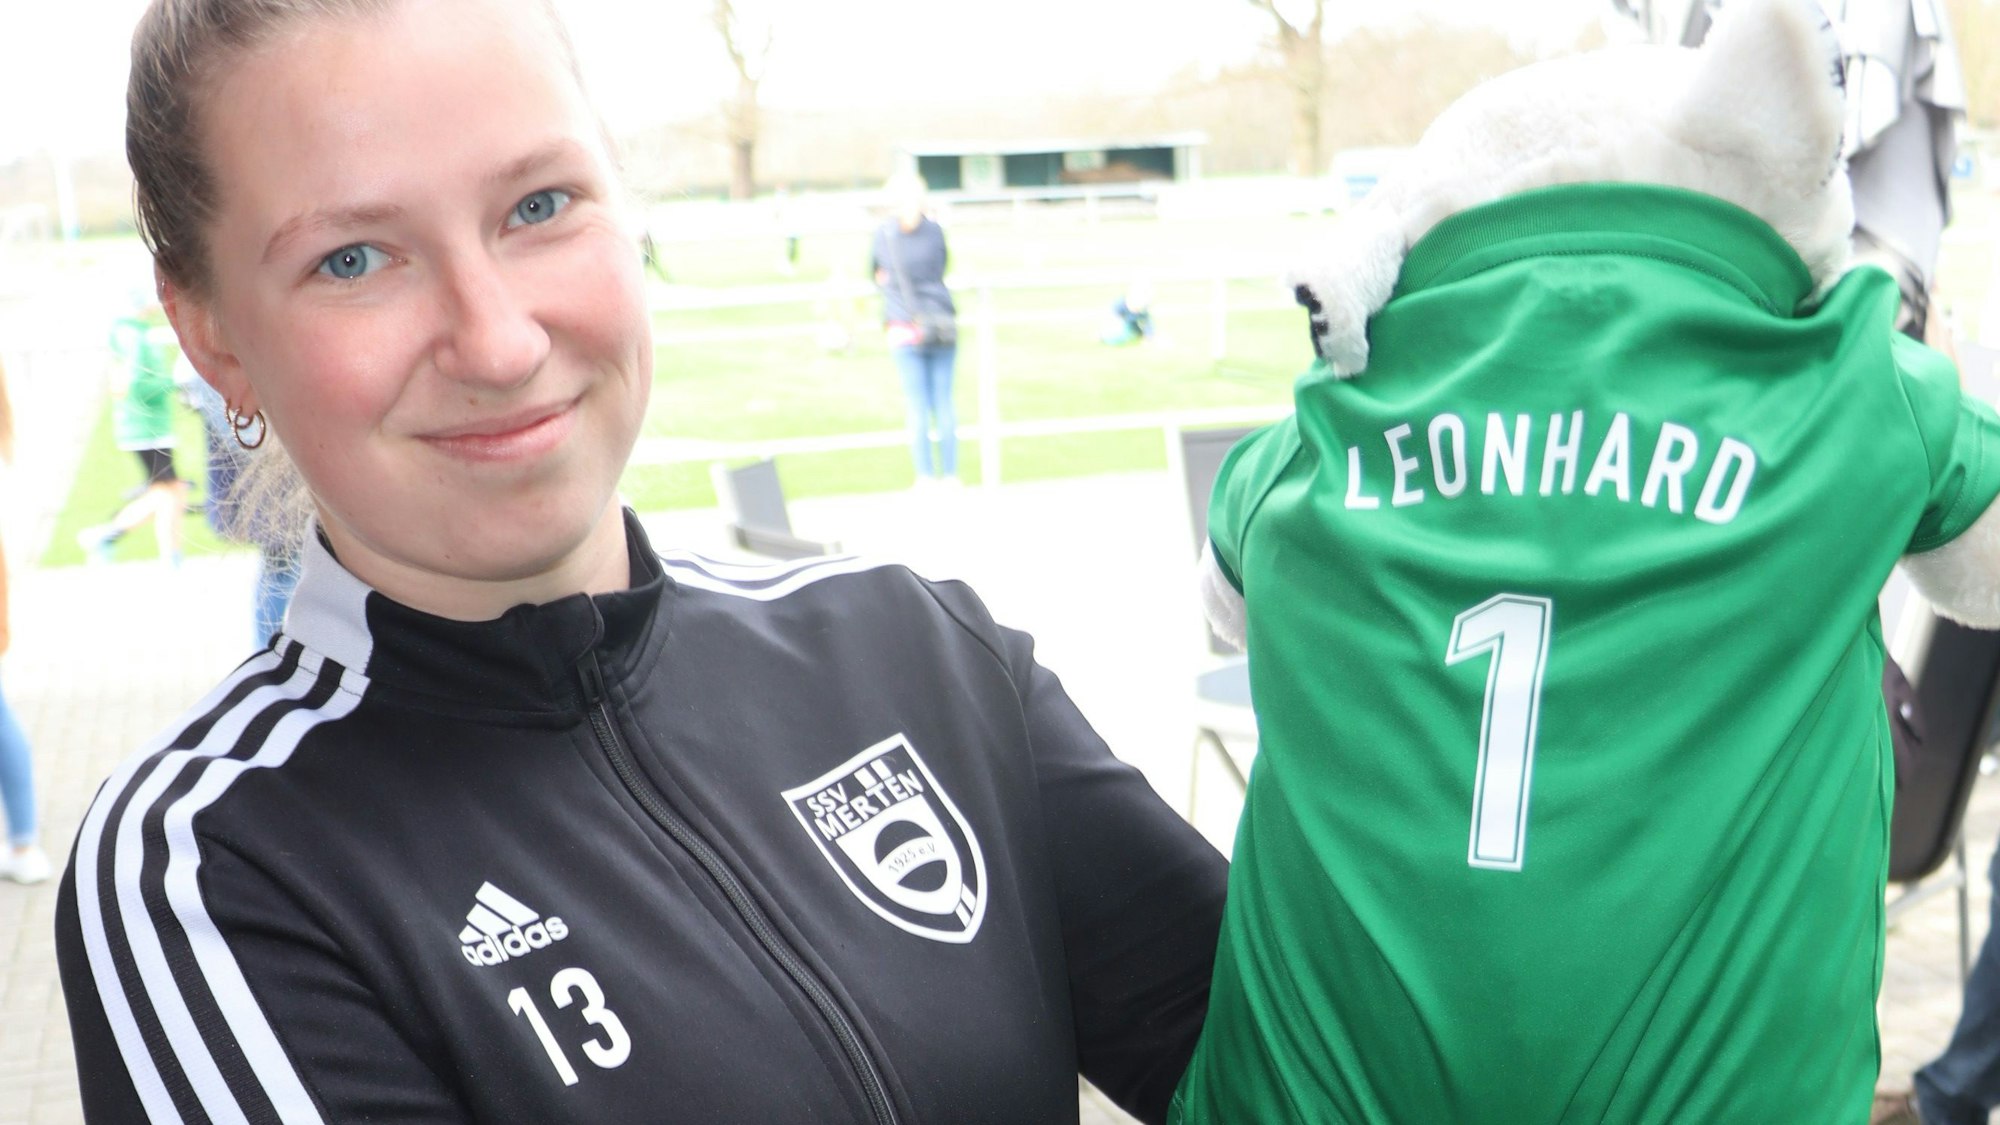 Das Maskottchen der Mädchenmannschaft trägt den Namen Leonhard.